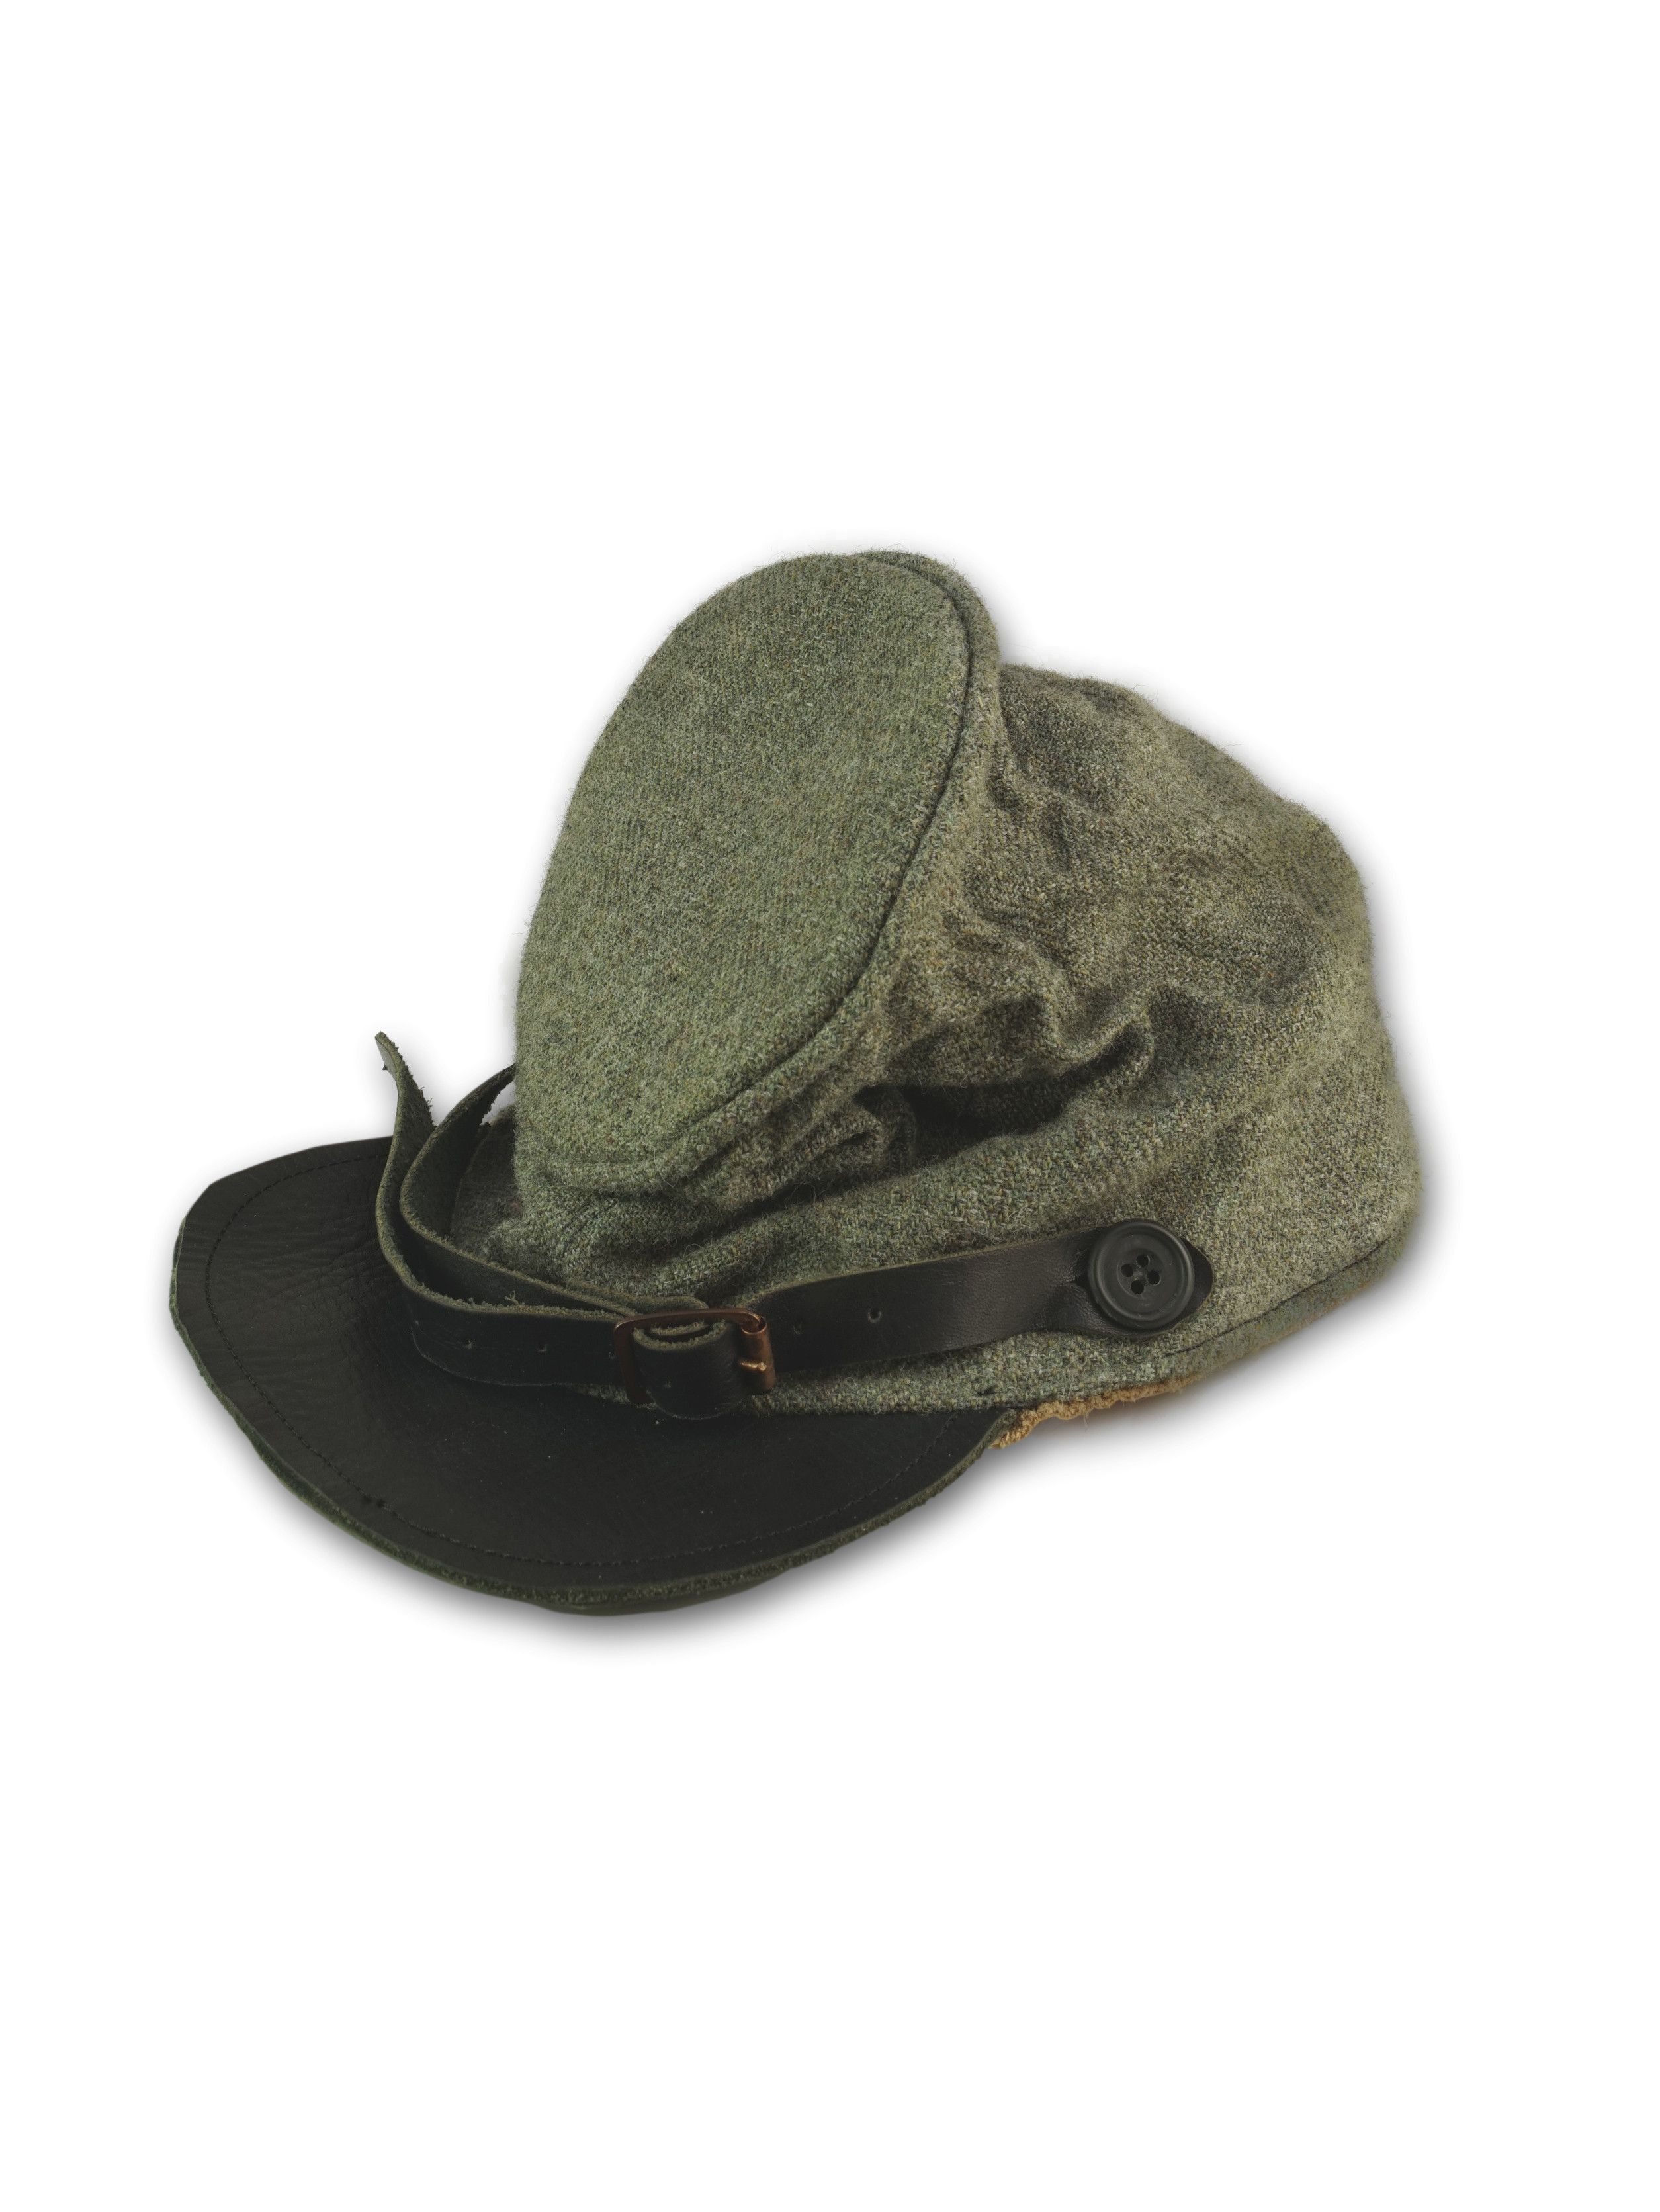 Men's Paul Harnden Shoemakers Hats | Grailed